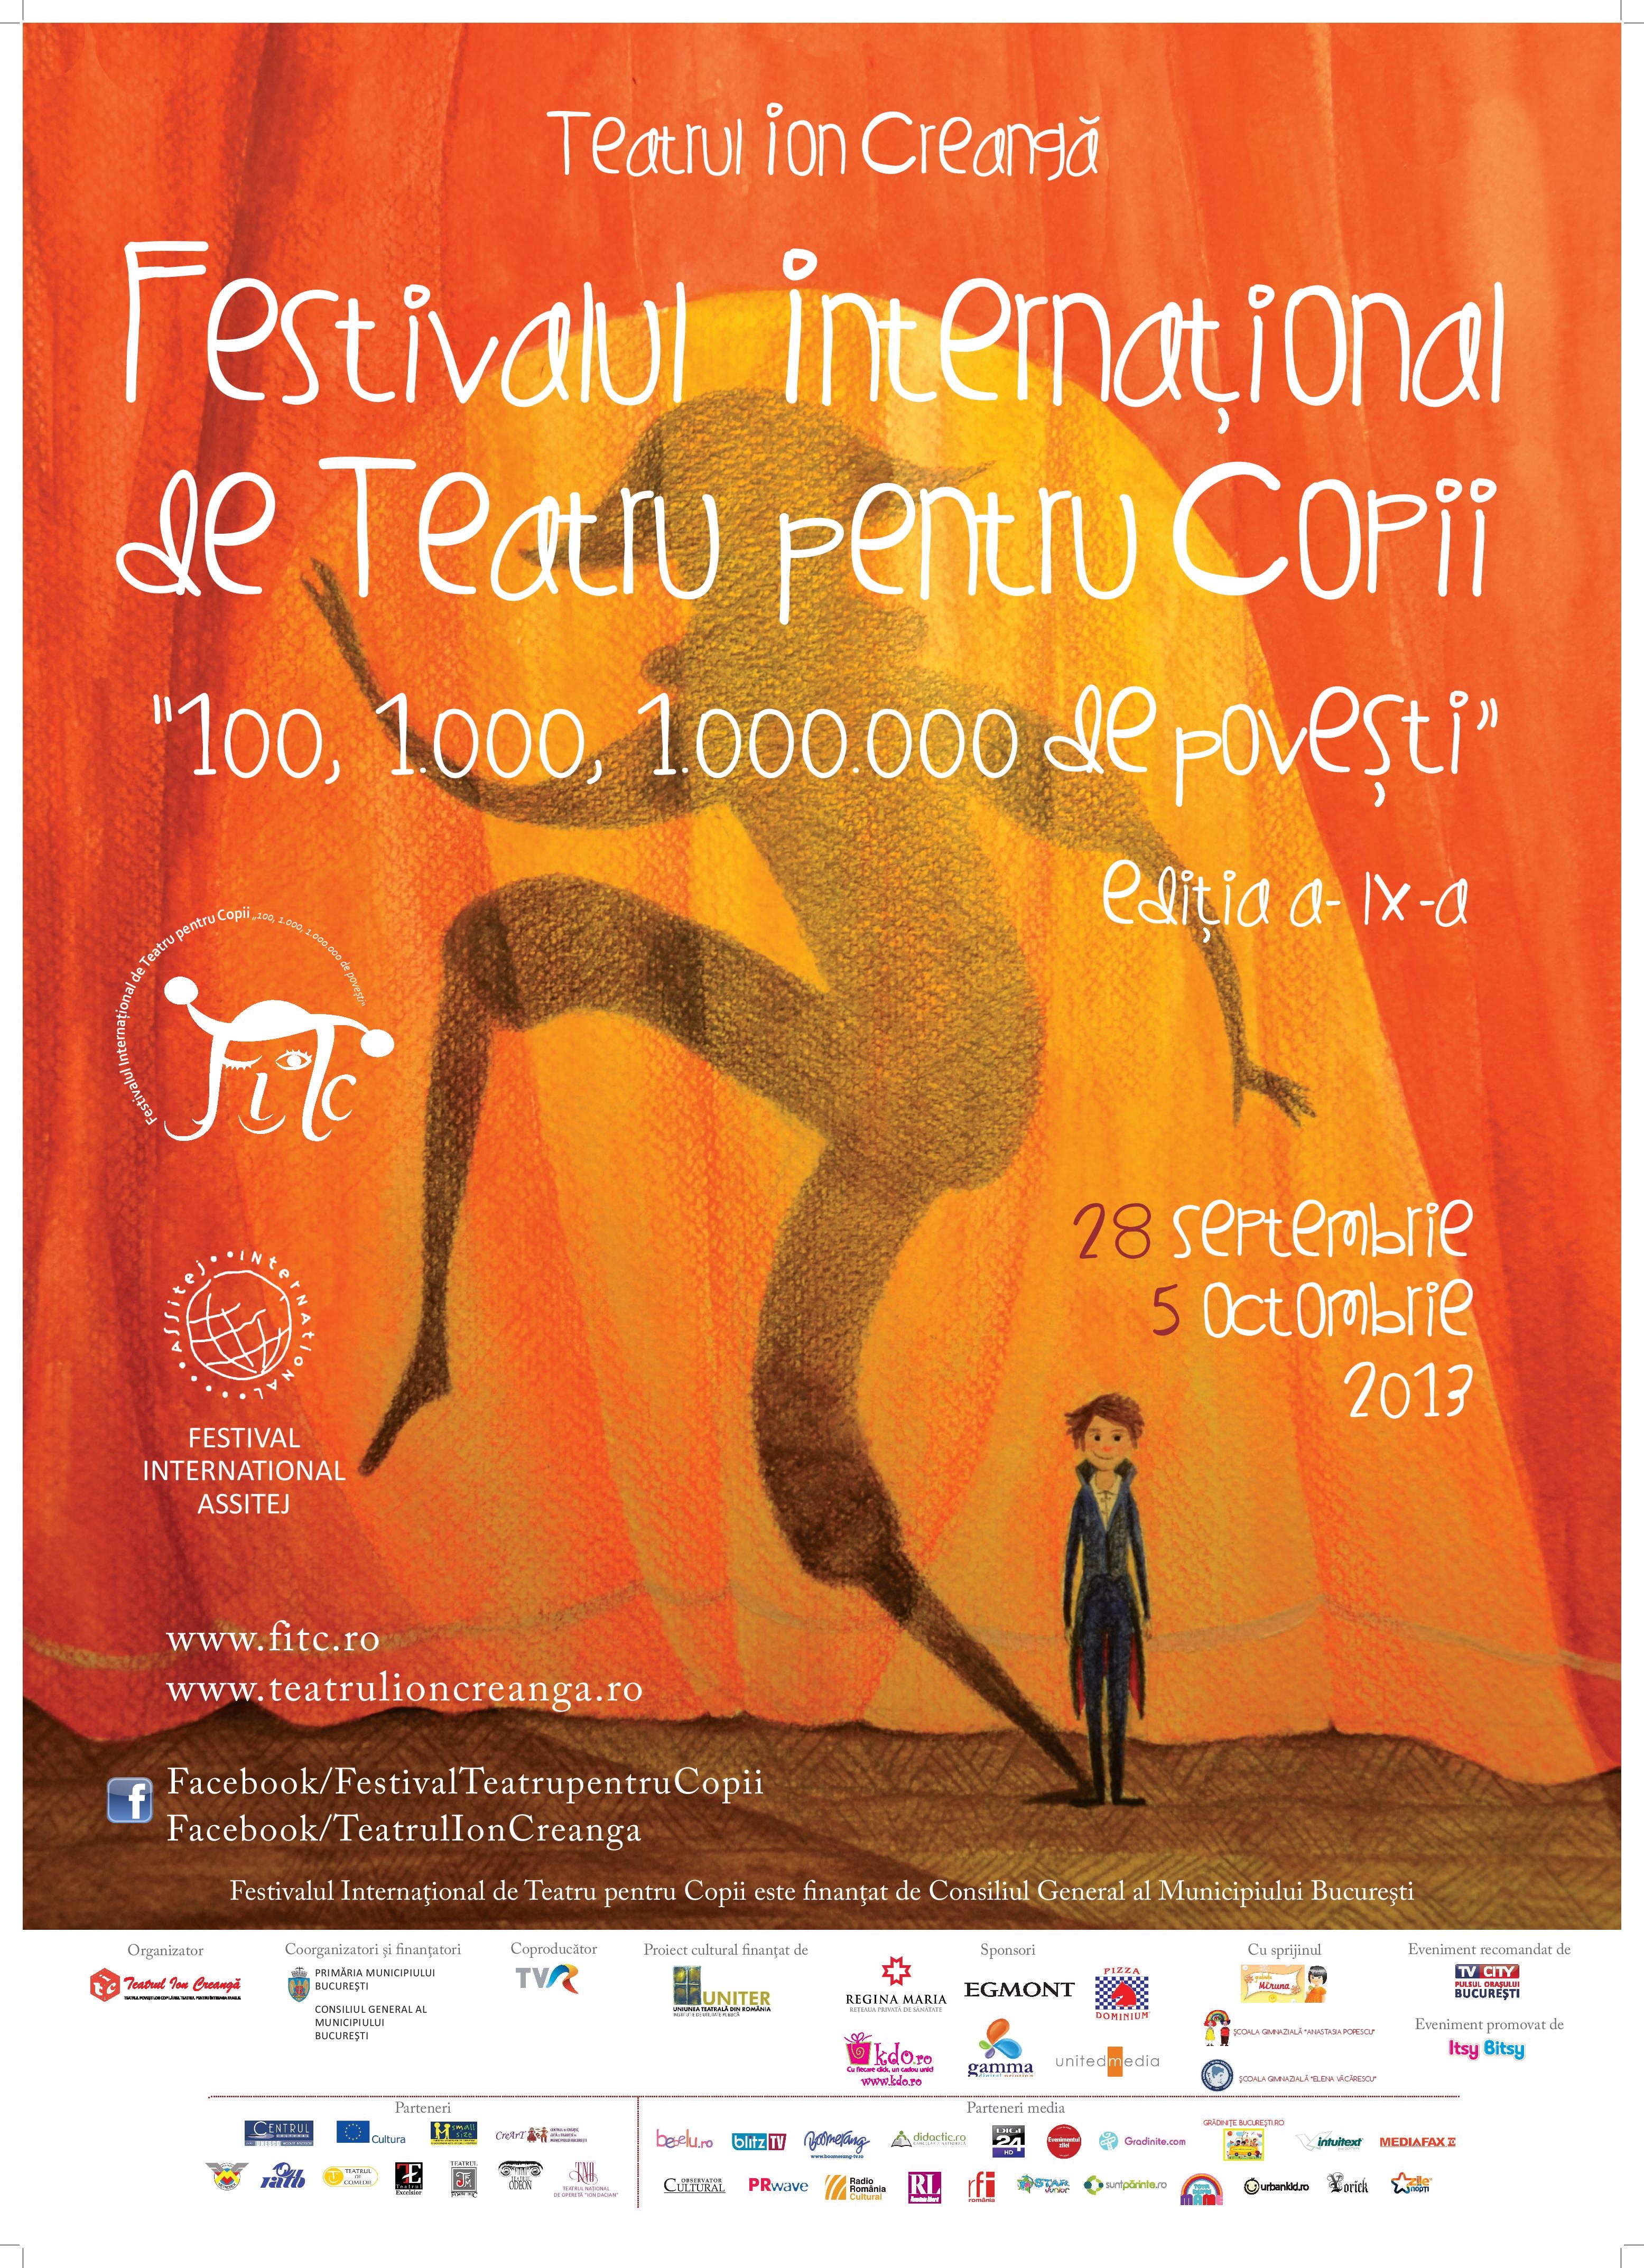 Festivalul International de Teatru pentru Copii